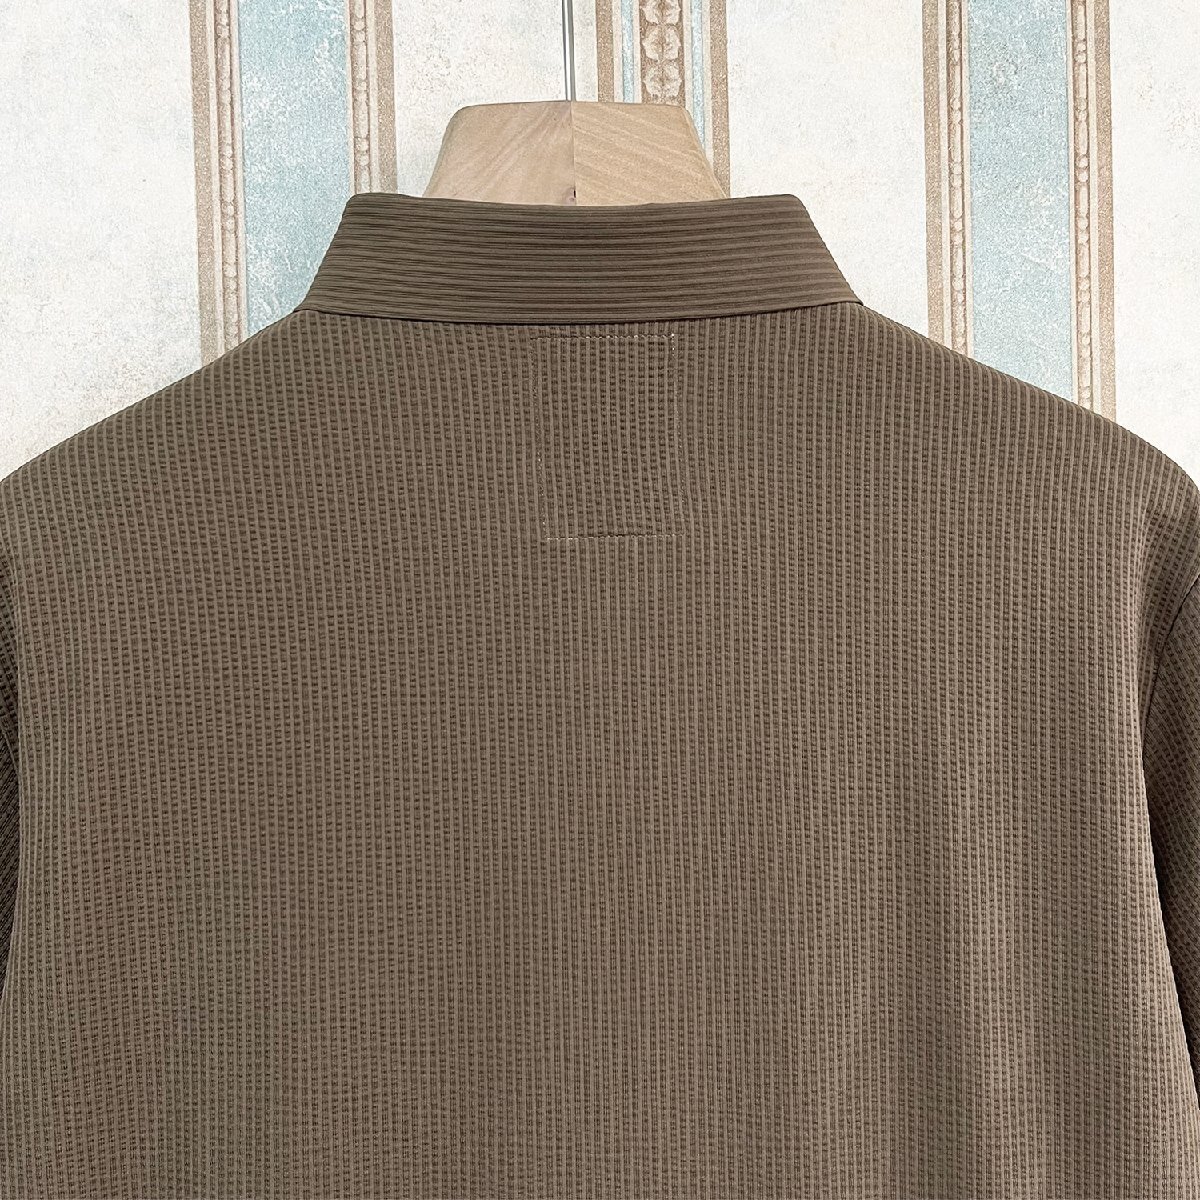 最高級 定価3万 FRANKLIN MUSK・アメリカ・ニューヨーク発 ポロシャツ 高品質シルク/コットン混 薄手 速乾 涼しい 洗練 ビジネス サイズ2の画像4